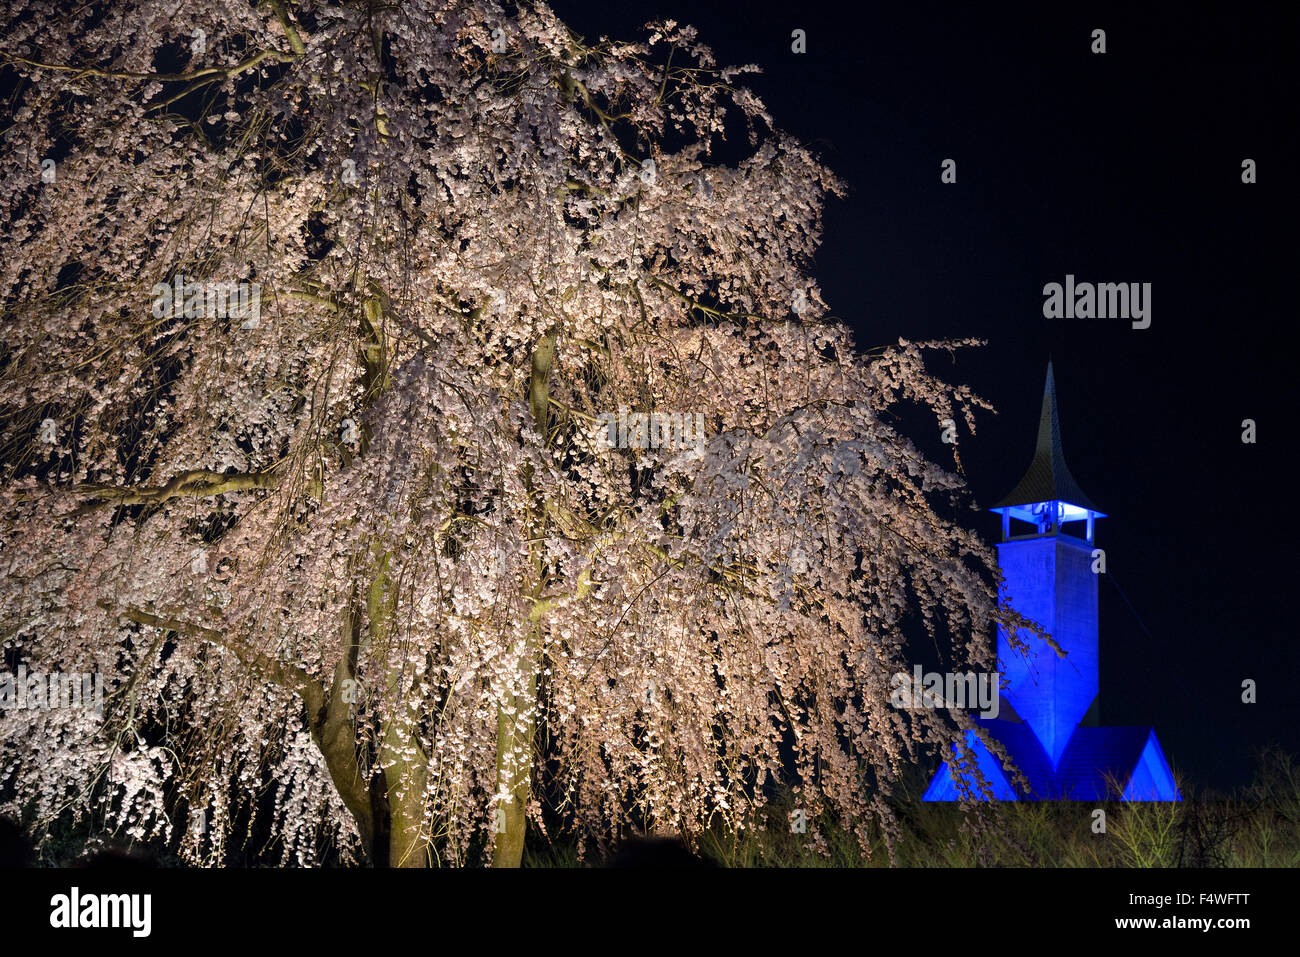 Parco fiorito Nabana no Sato. Illumina la fioritura dei ciliegi e la cappella blu sullo sfondo. Attrazioni di Nagoya. Scenario notturno primaverile. Foto Stock